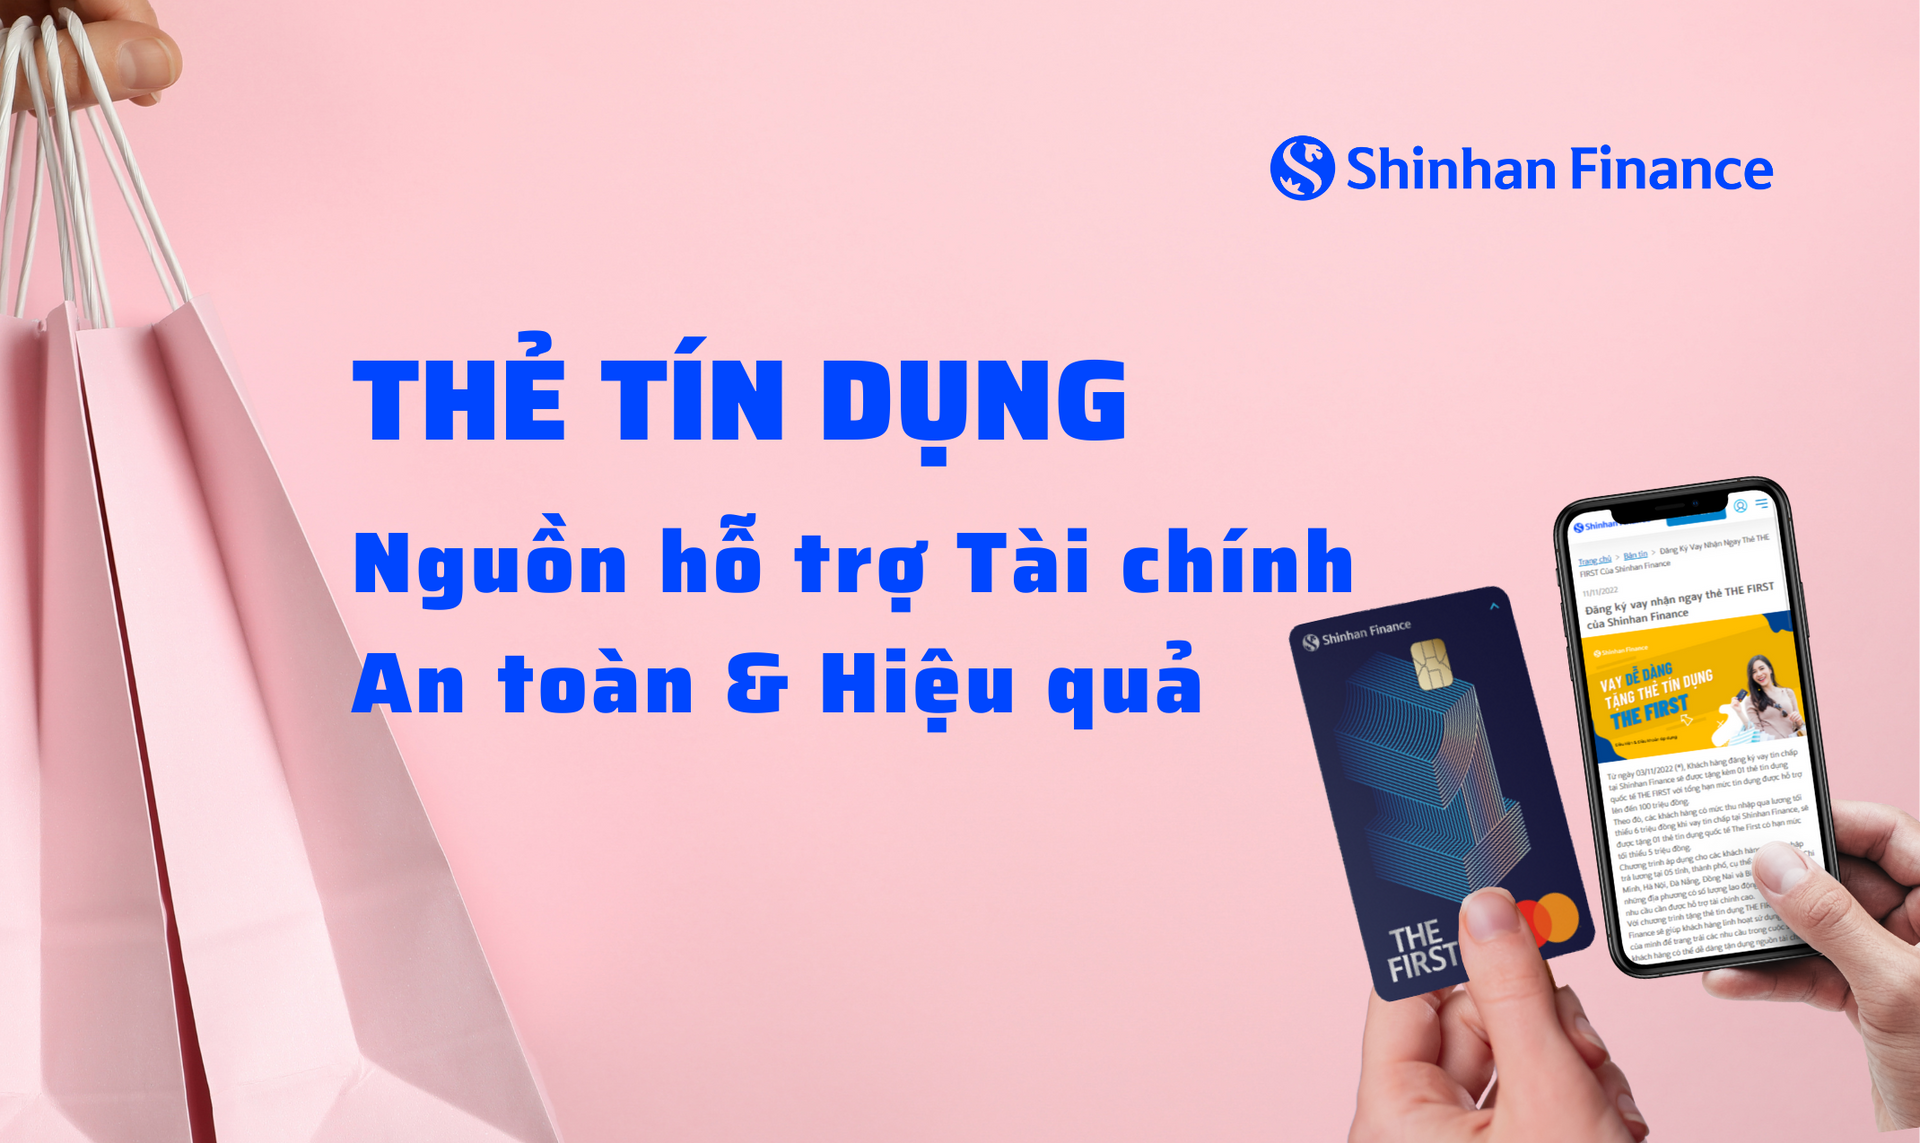 shinhan-finance-the-tin-dung-nguon-ho-tro-tai-chinh-an-toan-hieu-qua-vie.png